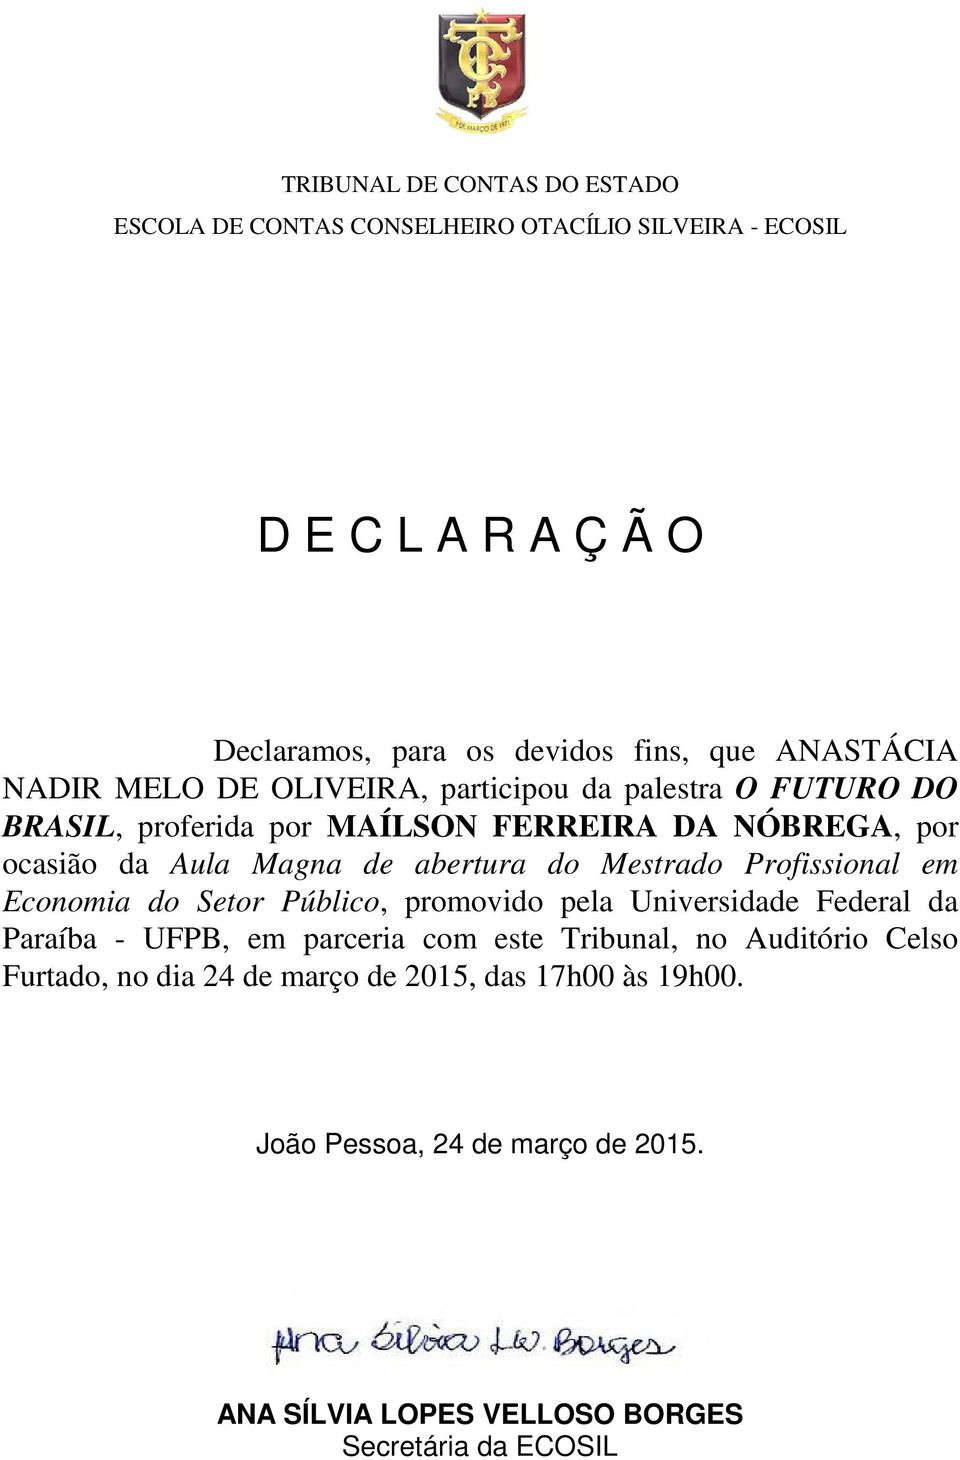 Mestrado Profissional em Economia do Setor Público, promovido pela Universidade Federal da Paraíba -